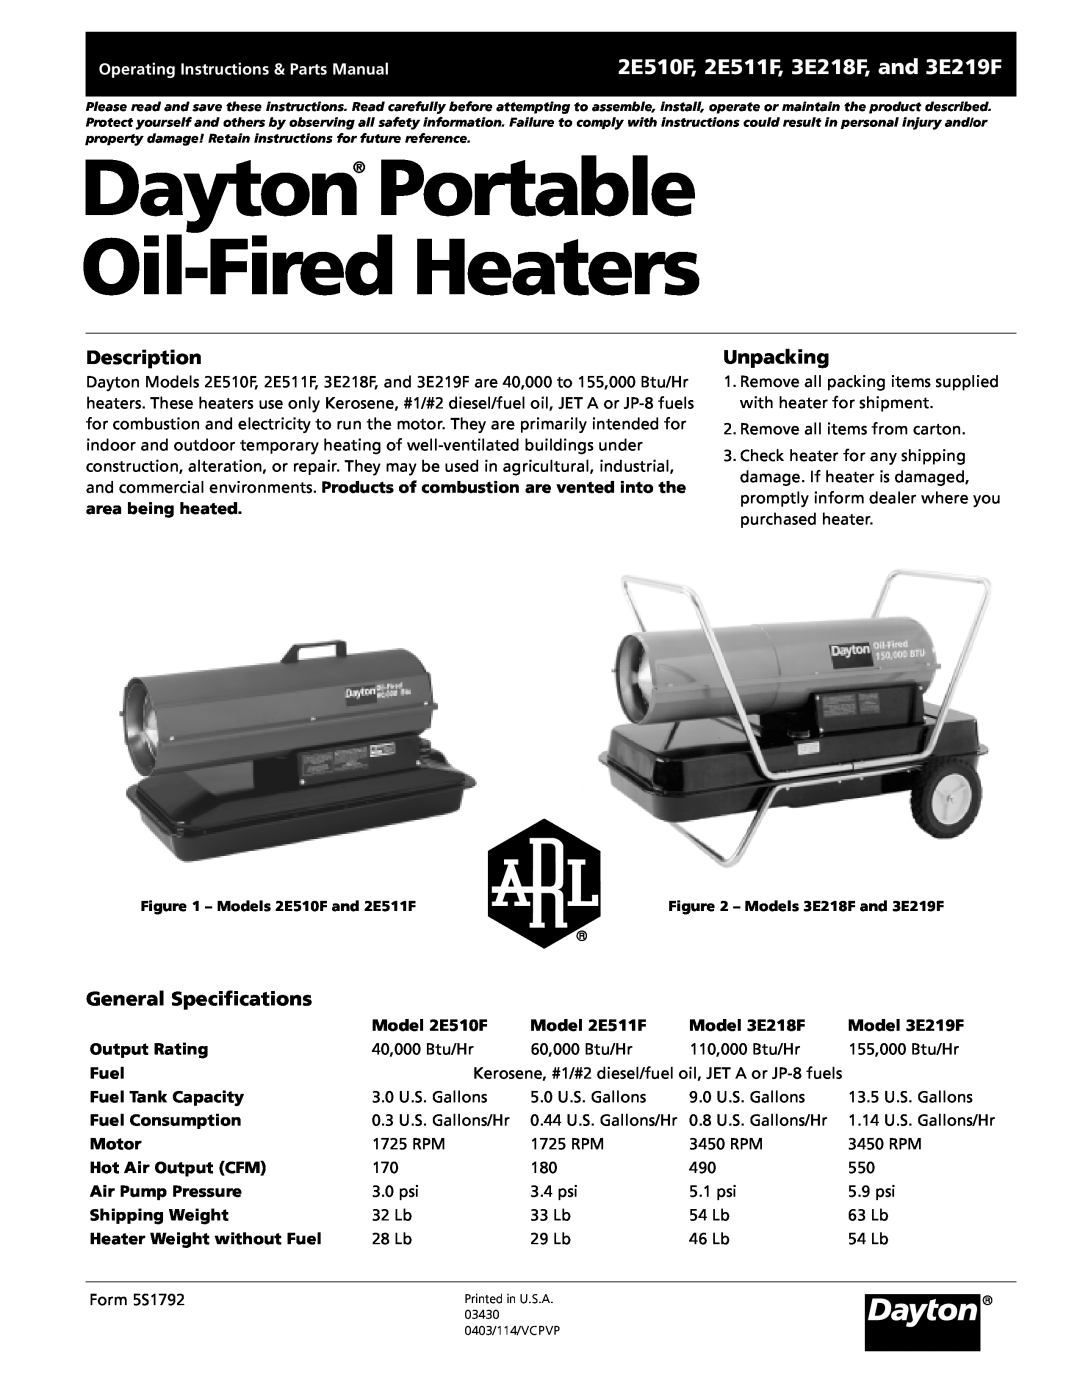 Dayton 5S1792 specifications Dayton Portable Oil-Fired Heaters, 2E510F, 2E511F, 3E218F, and 3E219F, Description, Unpacking 